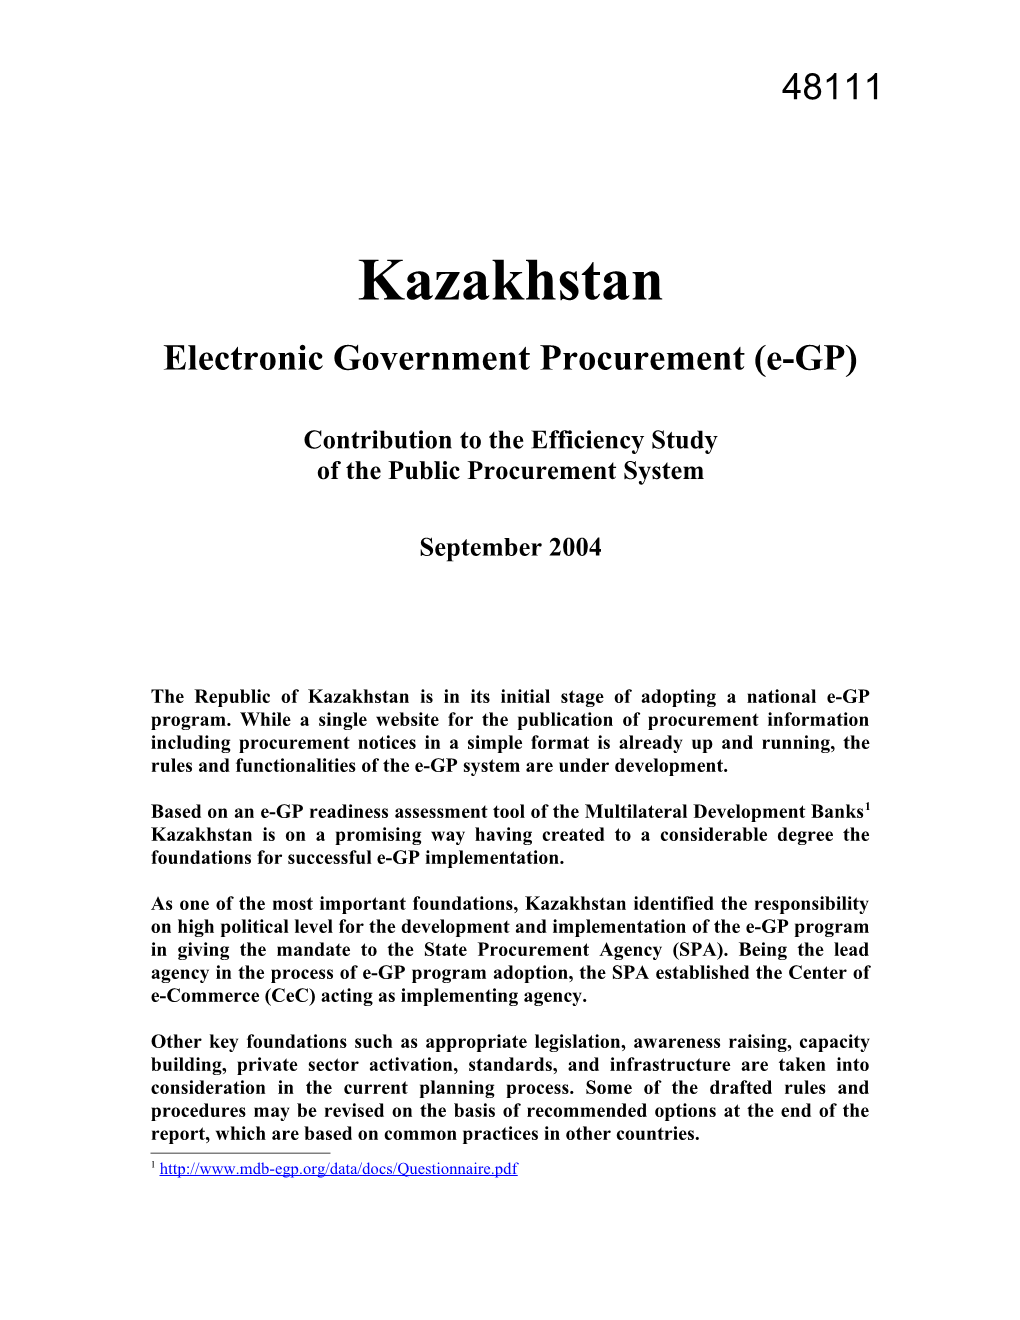 E-Government Procurement in Kazakhstan